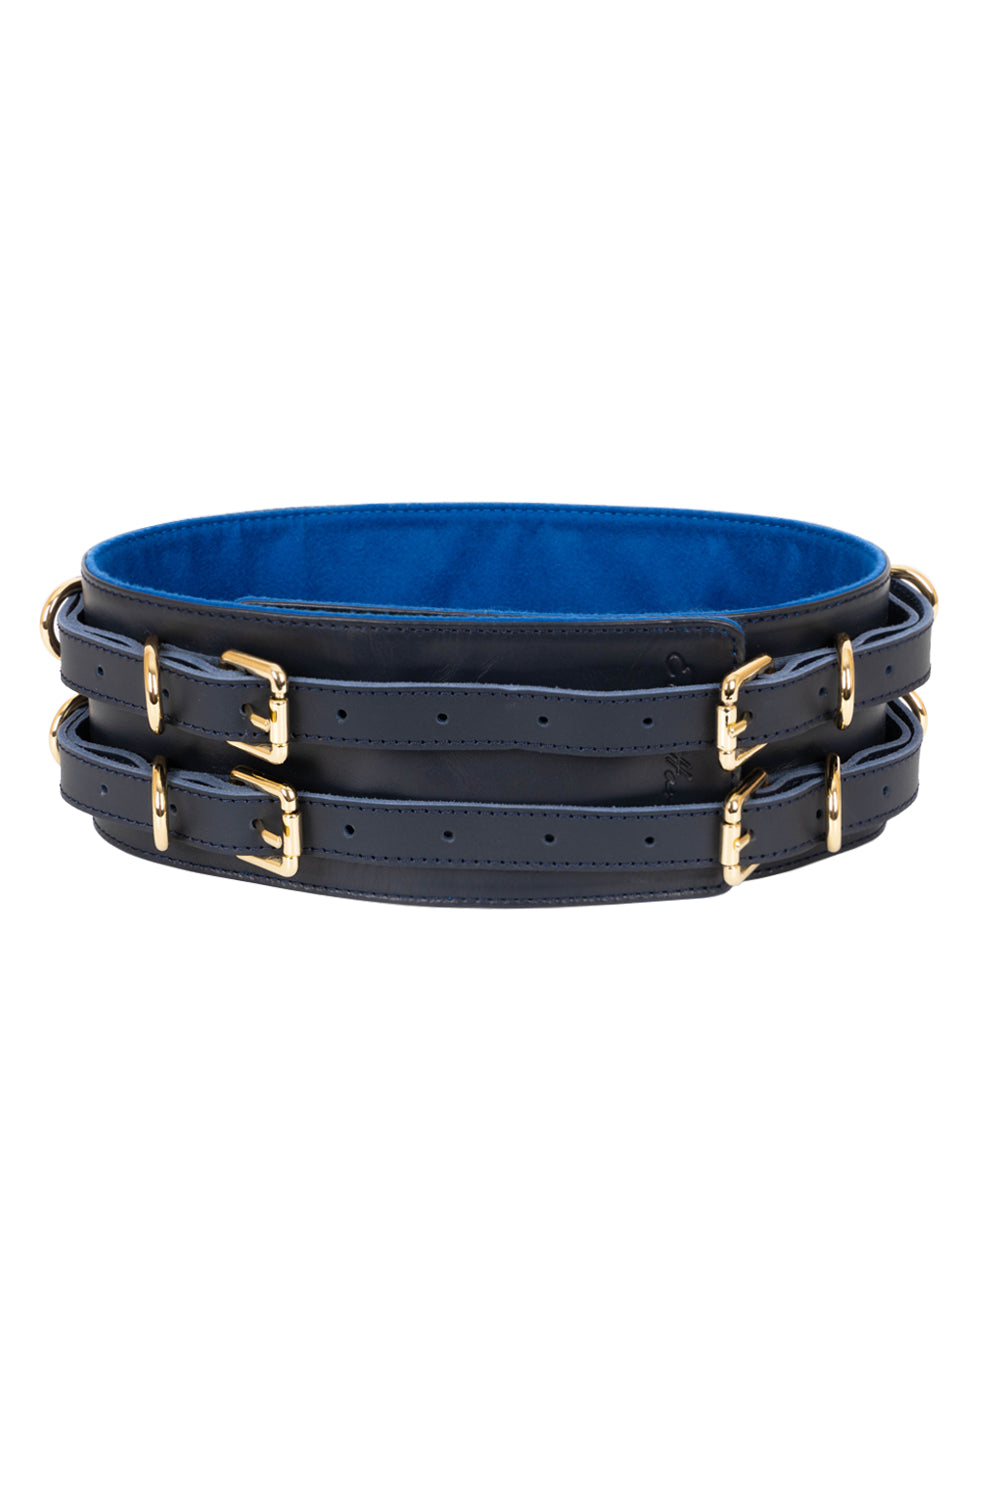 Leather Waist Belt. Dark Blue